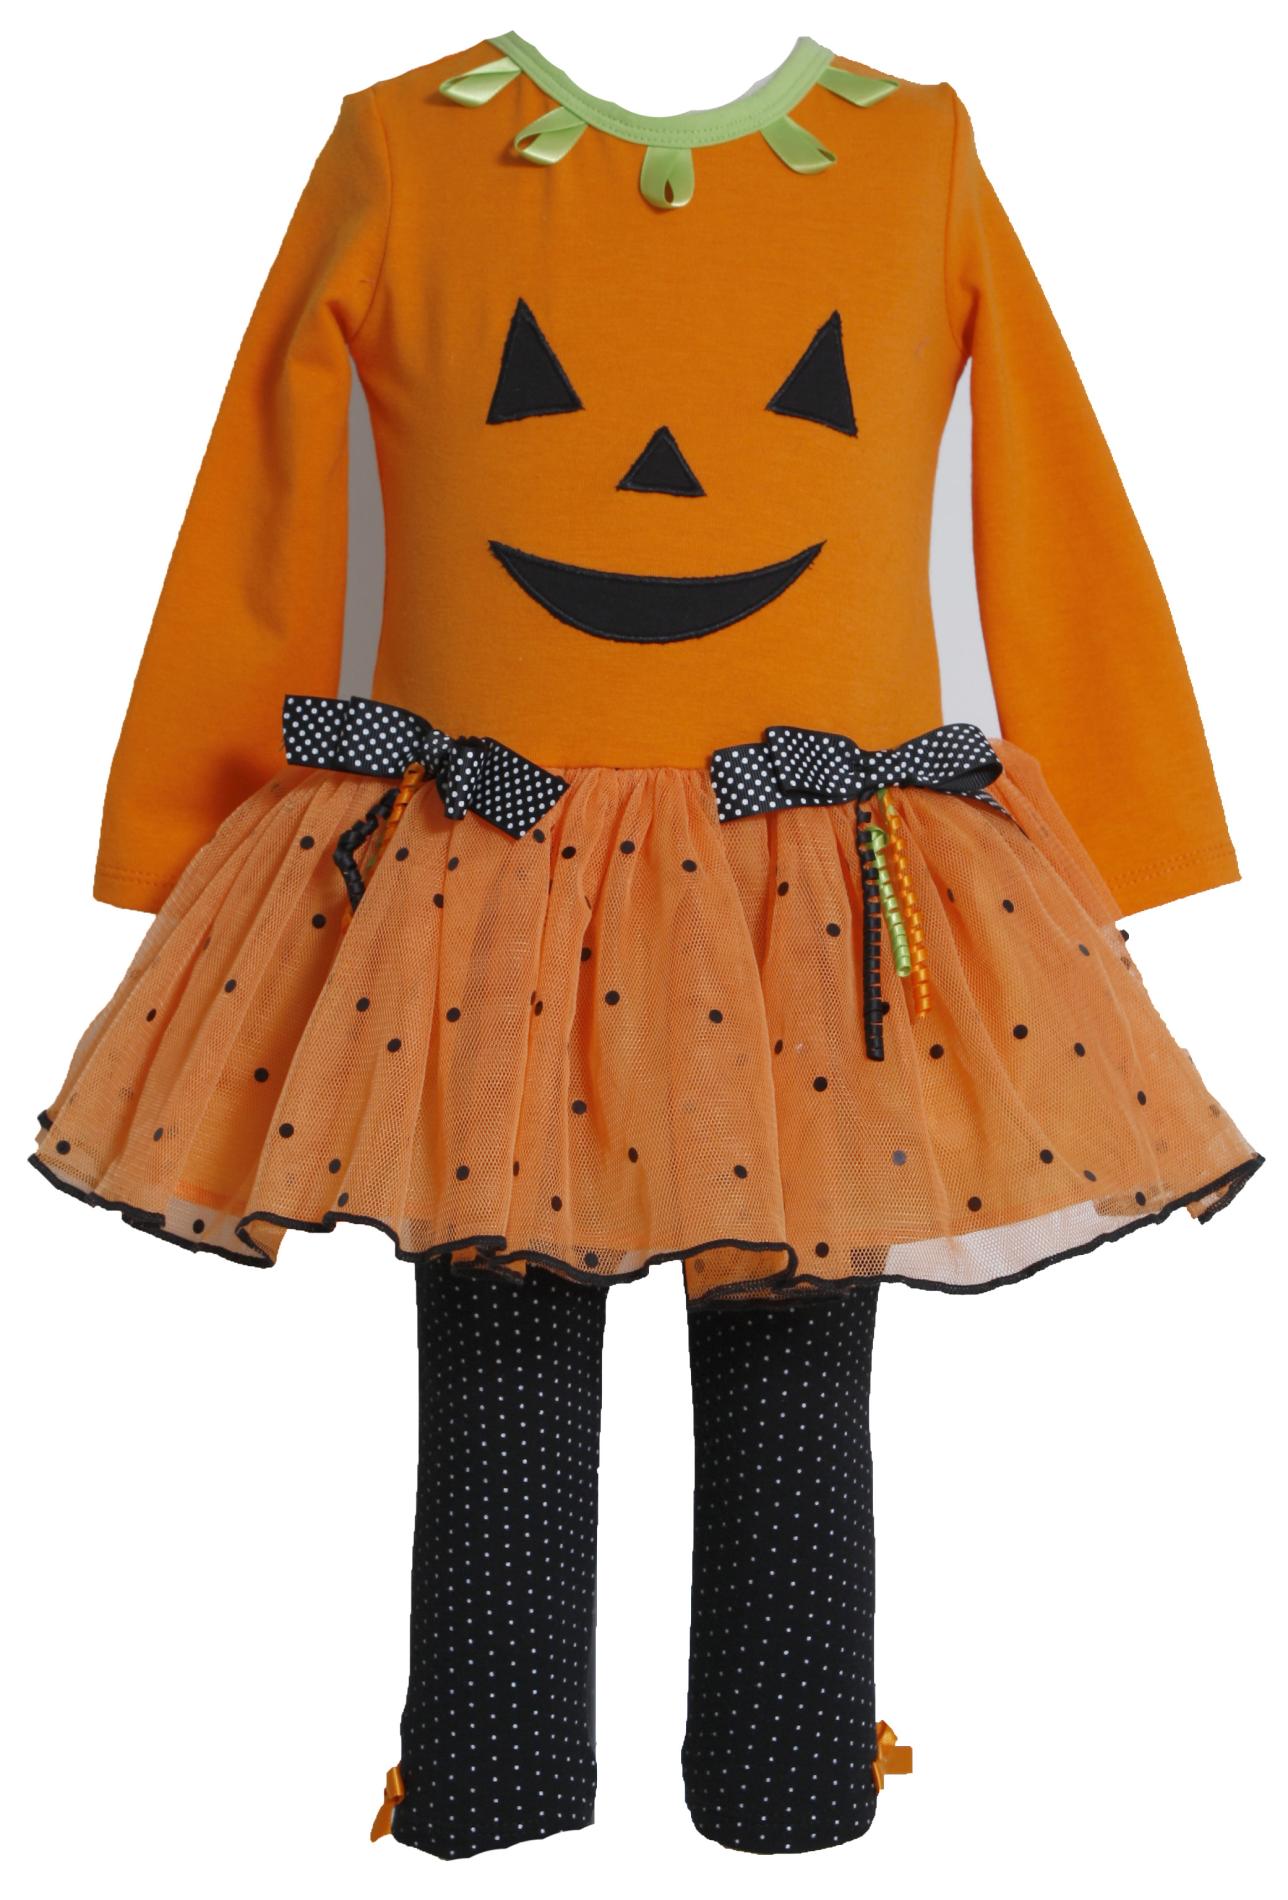 Ashley Ann Infant & Toddler Girl's Halloween Dress & Leggings - Jack-O'-Lantern